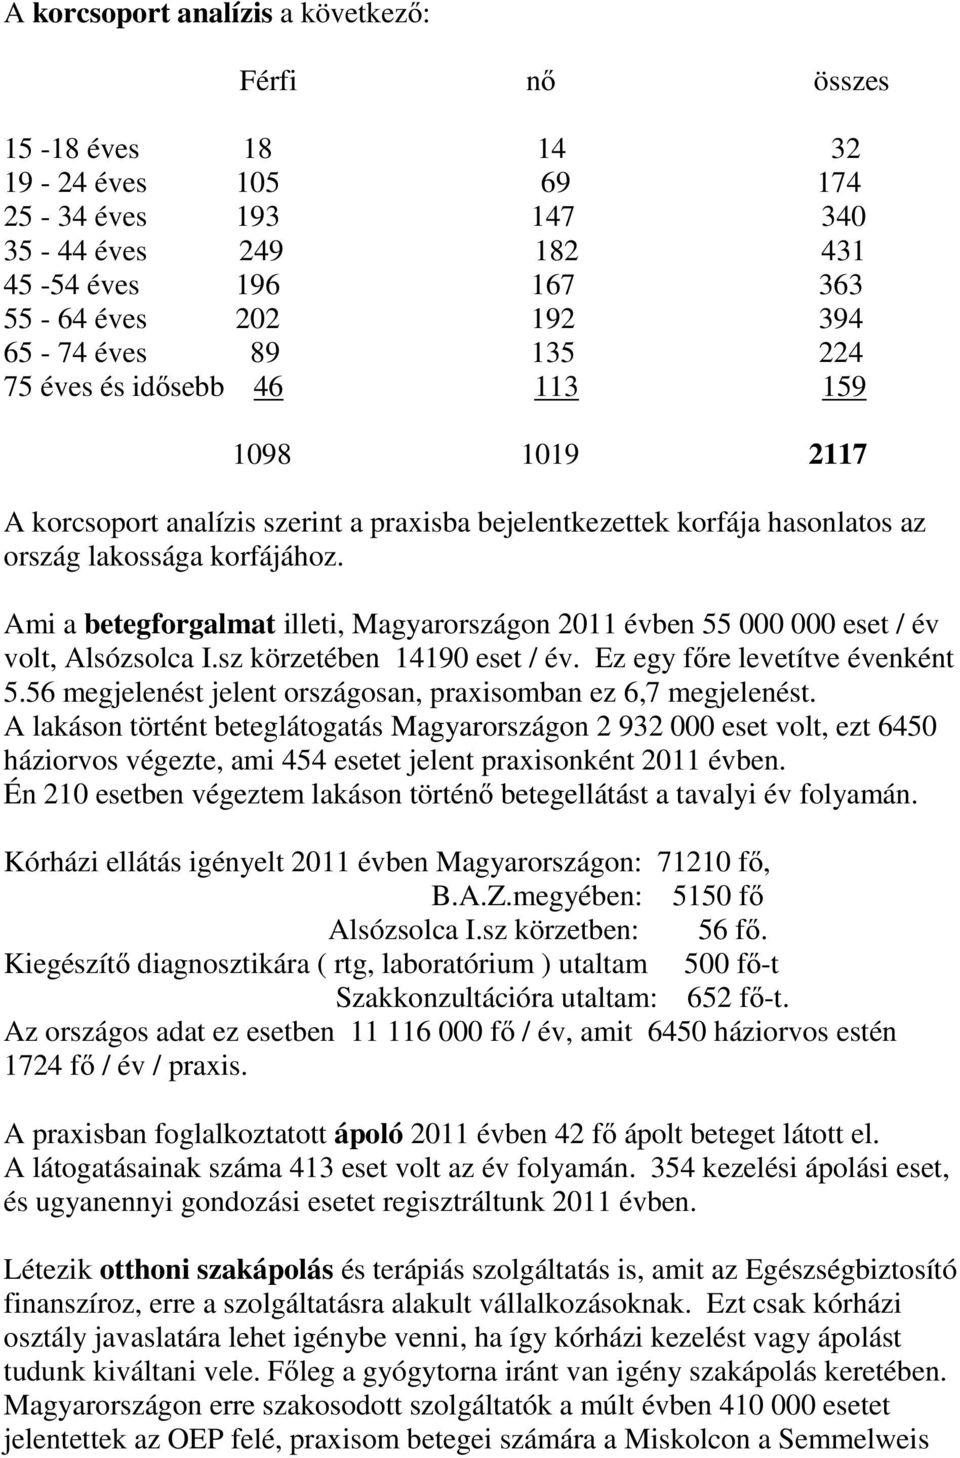 Ami a betegforgalmat illeti, Magyarországon 2011 évben 55 000 000 eset / év volt, Alsózsolca I.sz körzetében 14190 eset / év. Ez egy főre levetítve évenként 5.